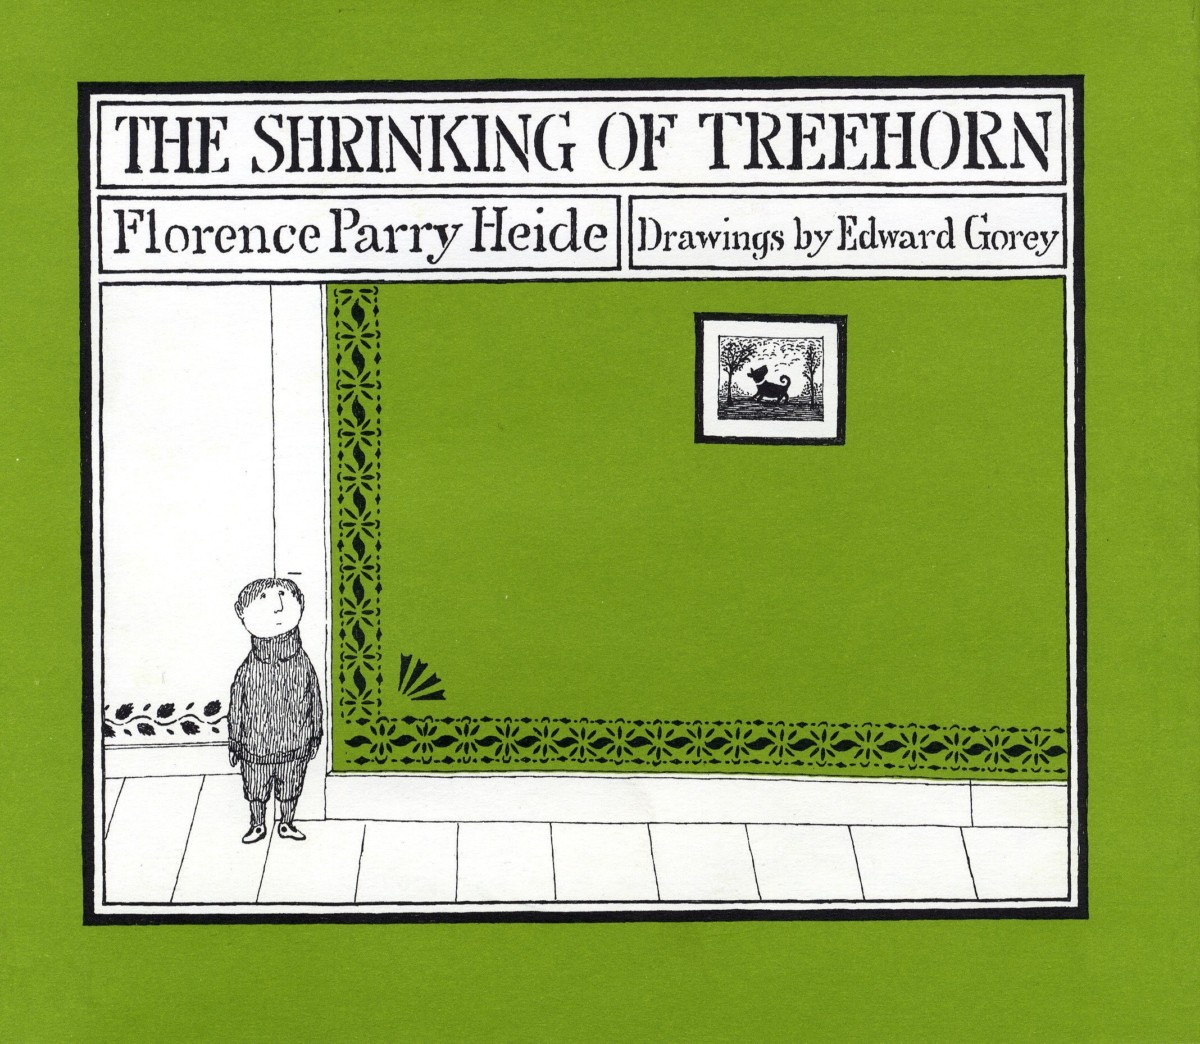 Ron Howard adaptará The Shrinking of Treehorn como película animada